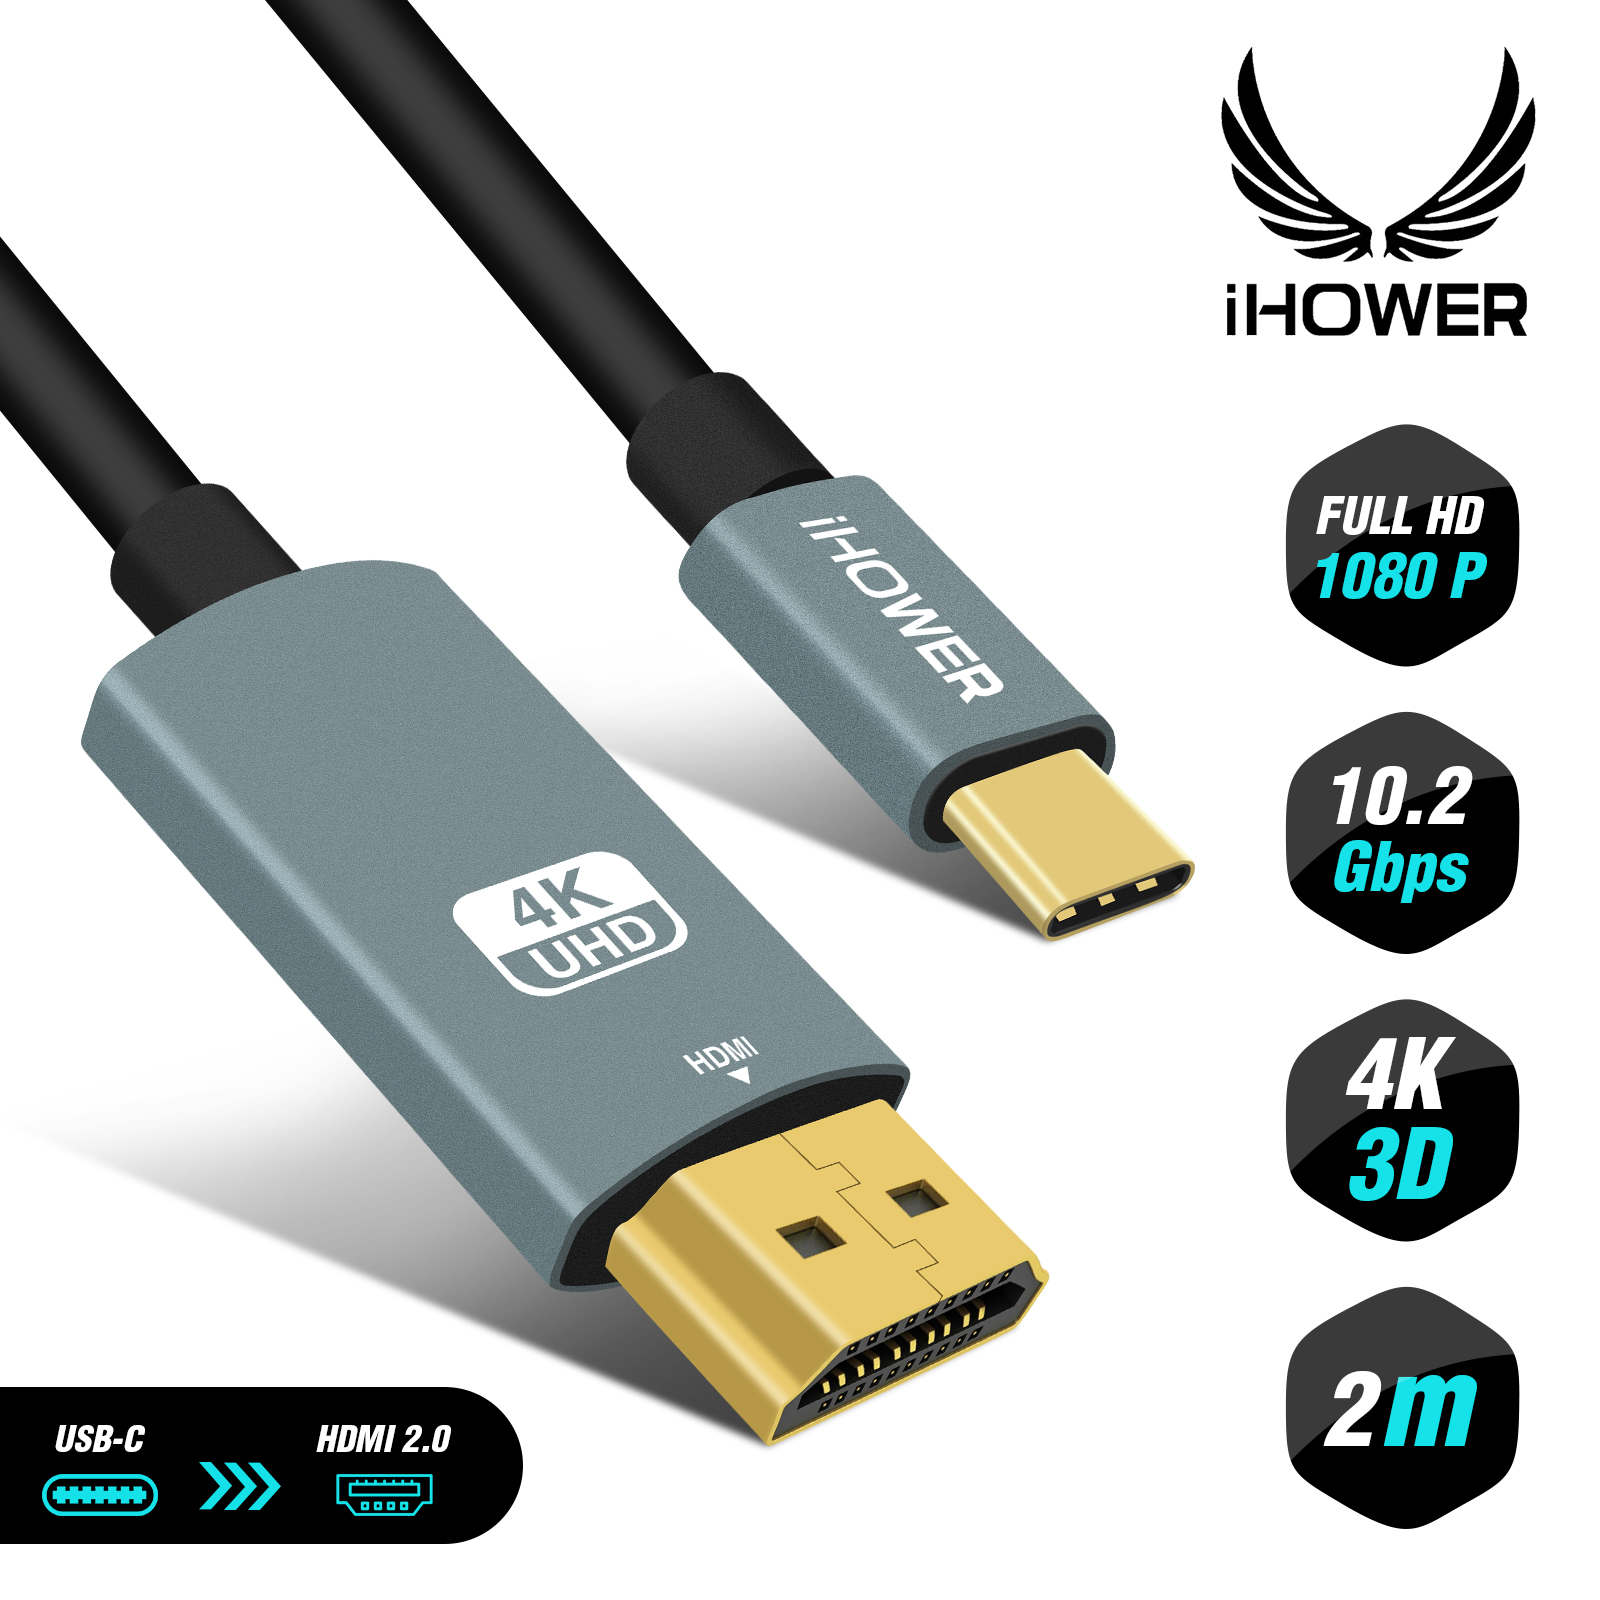 Cable Usb C vers HDMI pour relier un smartphone/tablette à une TV 4K